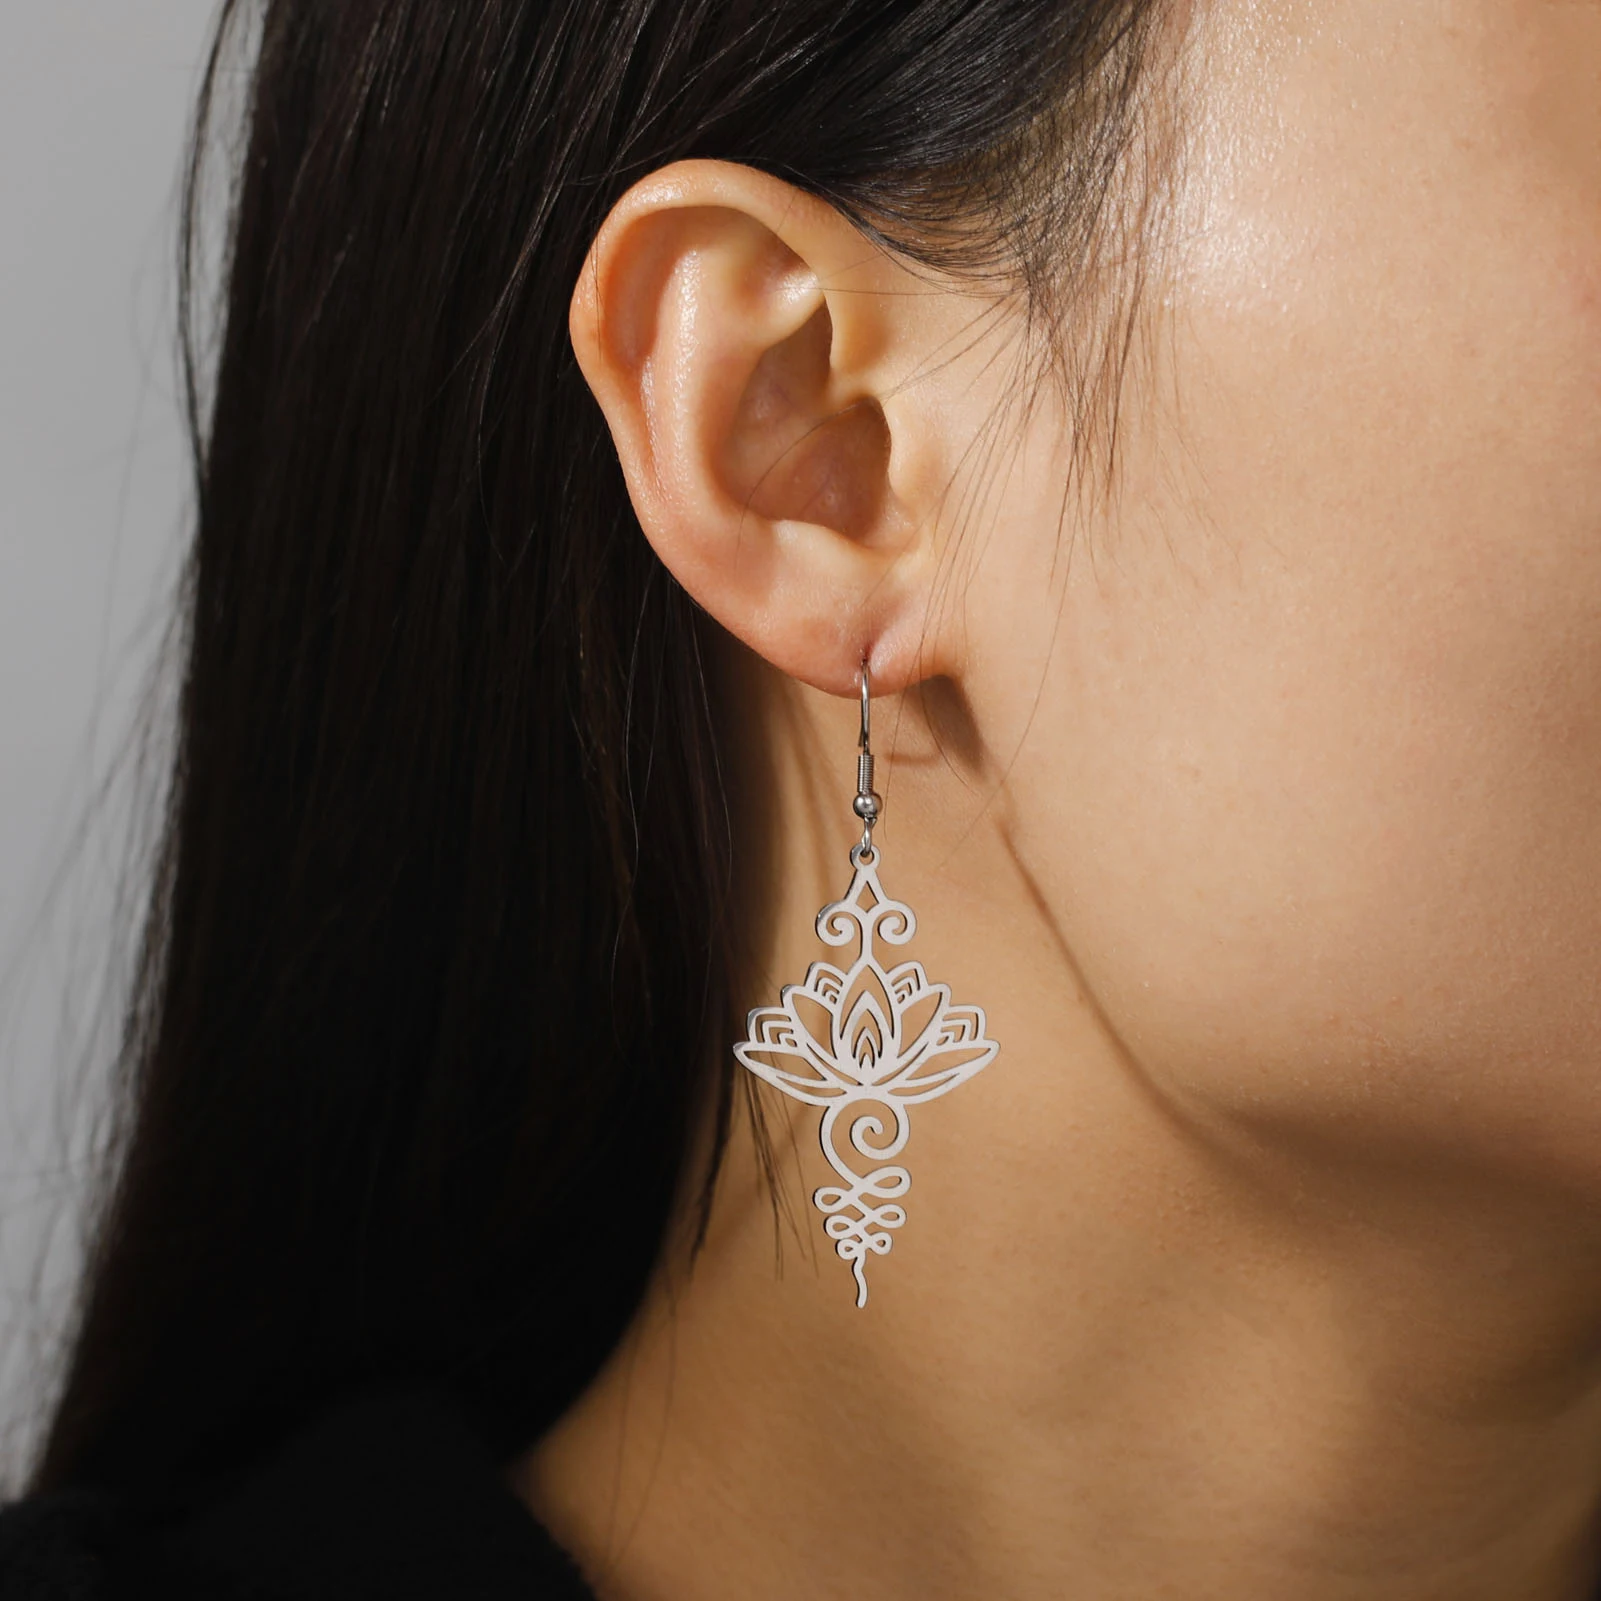 Yoga Lotus Earrings Sweet Cute Cartoon Flowers Girls Pendants Charms Fashion Earrings For Women Jewelry Everyday Wear Gifts